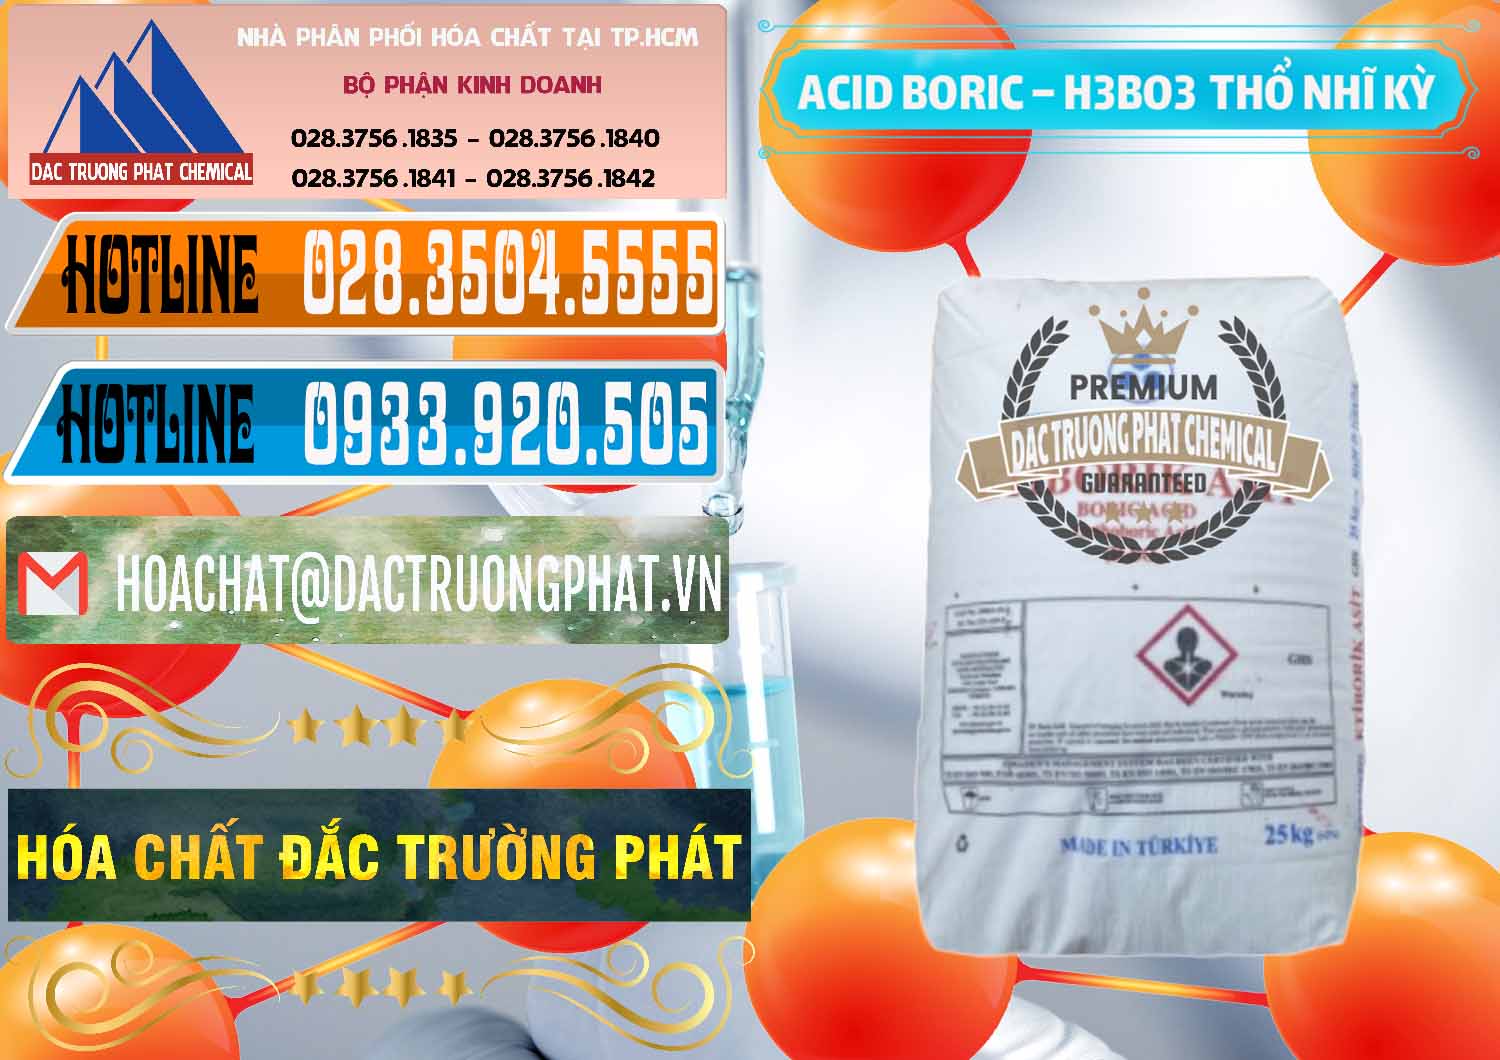 Cty chuyên bán & phân phối Acid Boric – Axit Boric H3BO3 Etimaden Thổ Nhĩ Kỳ Turkey - 0369 - Công ty chuyên cung cấp - bán hóa chất tại TP.HCM - stmp.net